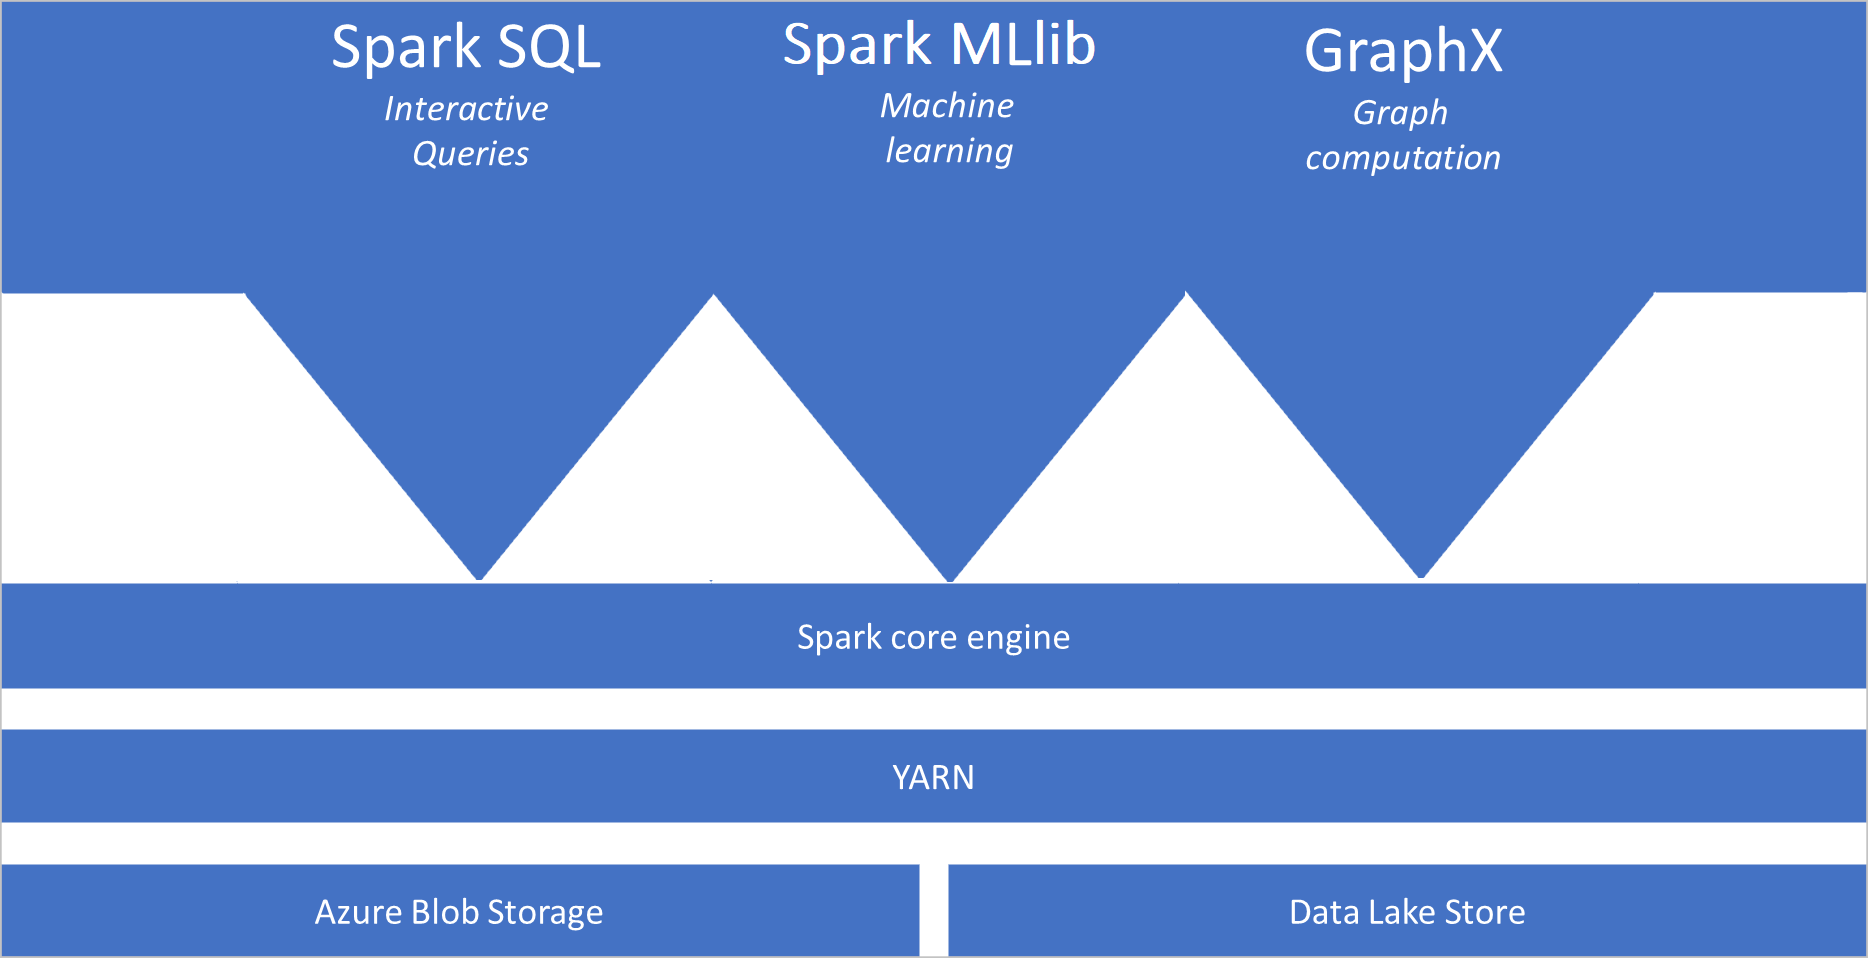 図は、ストレージ サービス上の YARN レイヤーの上にある Spark コア エンジンにリンクされた Spark SQL、Spark MLib、GraphX を示しています。